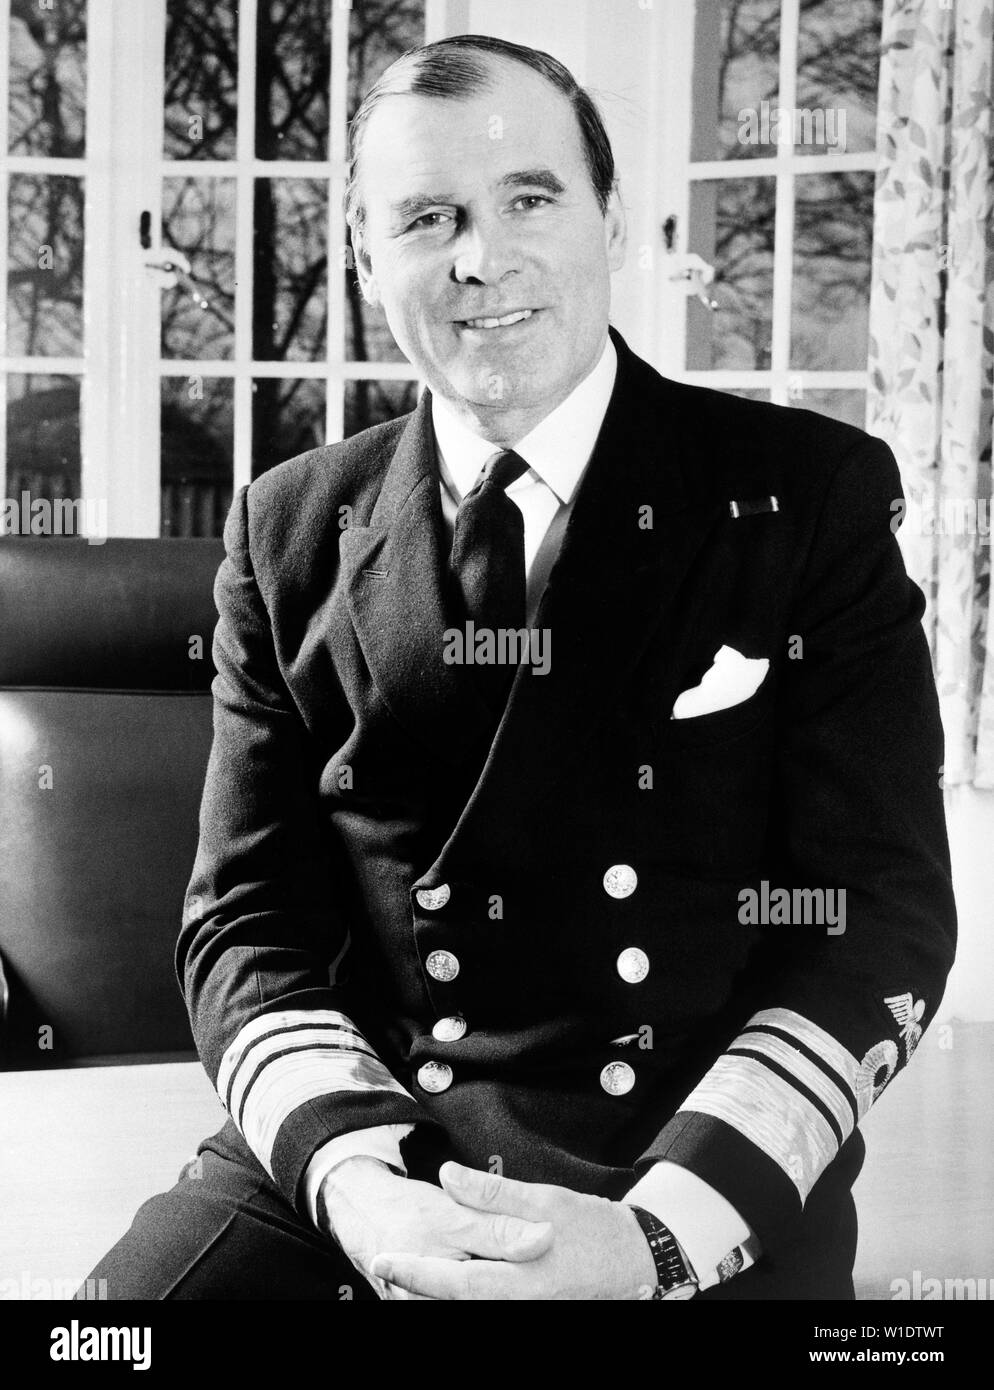 Ehemaliger Vice Admiral Sir Nicholas Hunt, der im Juni Admiral Sir William Staveley im Rang eines Admirals als Commander-in-chief gelungen Flotte. Stockfoto